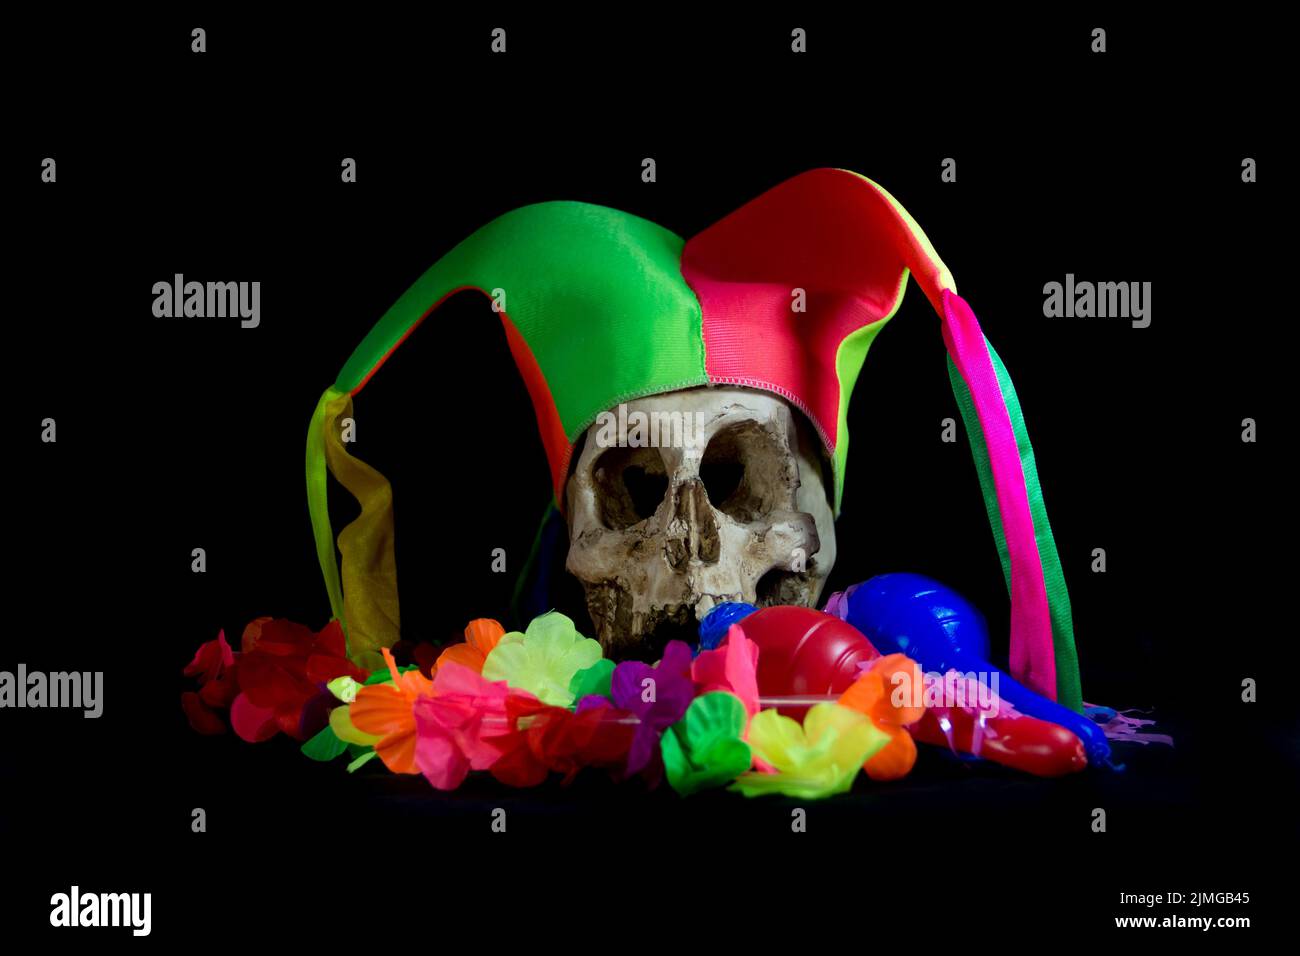 Crâne humain avec chapeau d'arlequin et éléments de fête Banque D'Images